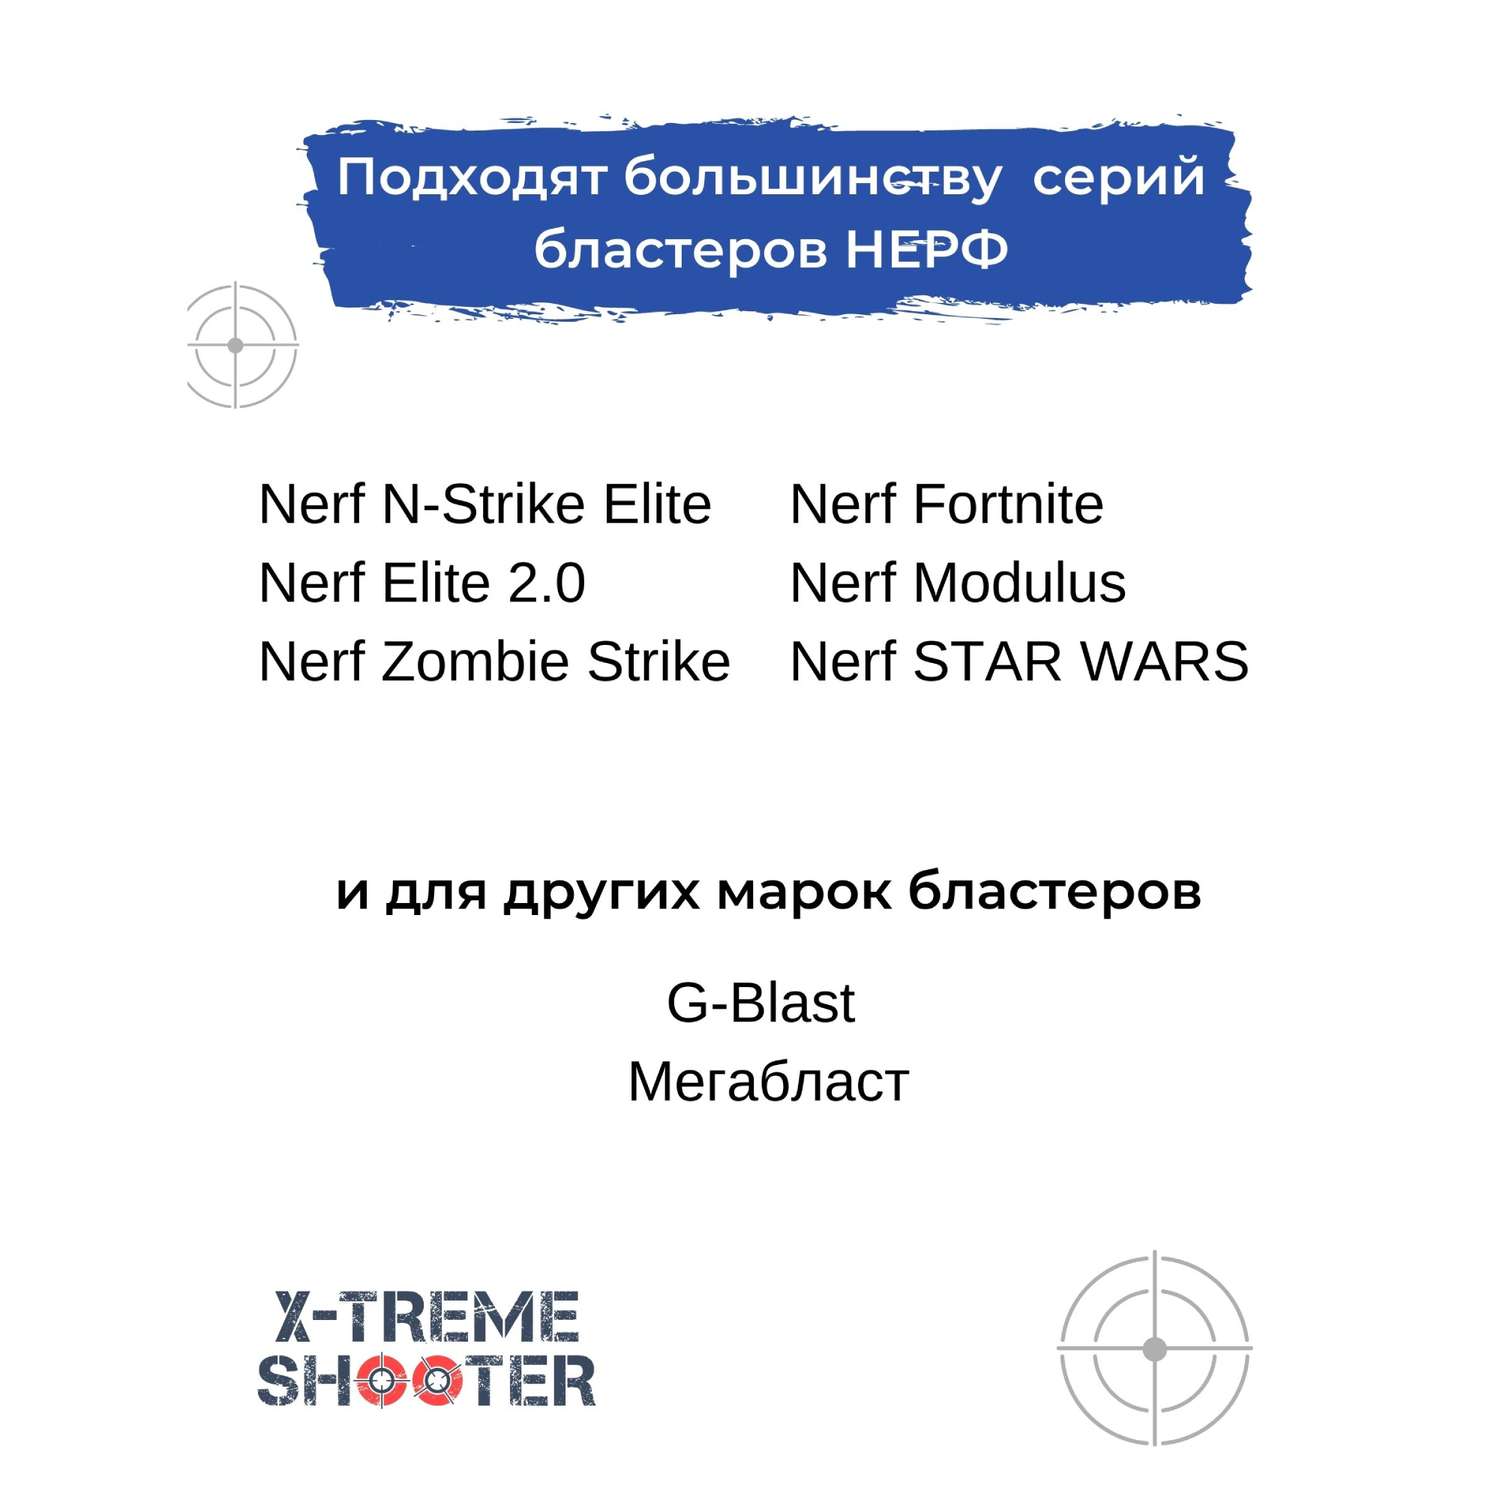 Патроны мягкие X-Treme Shooter с присосками пули пульки стрелы для бластера Nerf пистолета Нерф 50 шт - фото 8